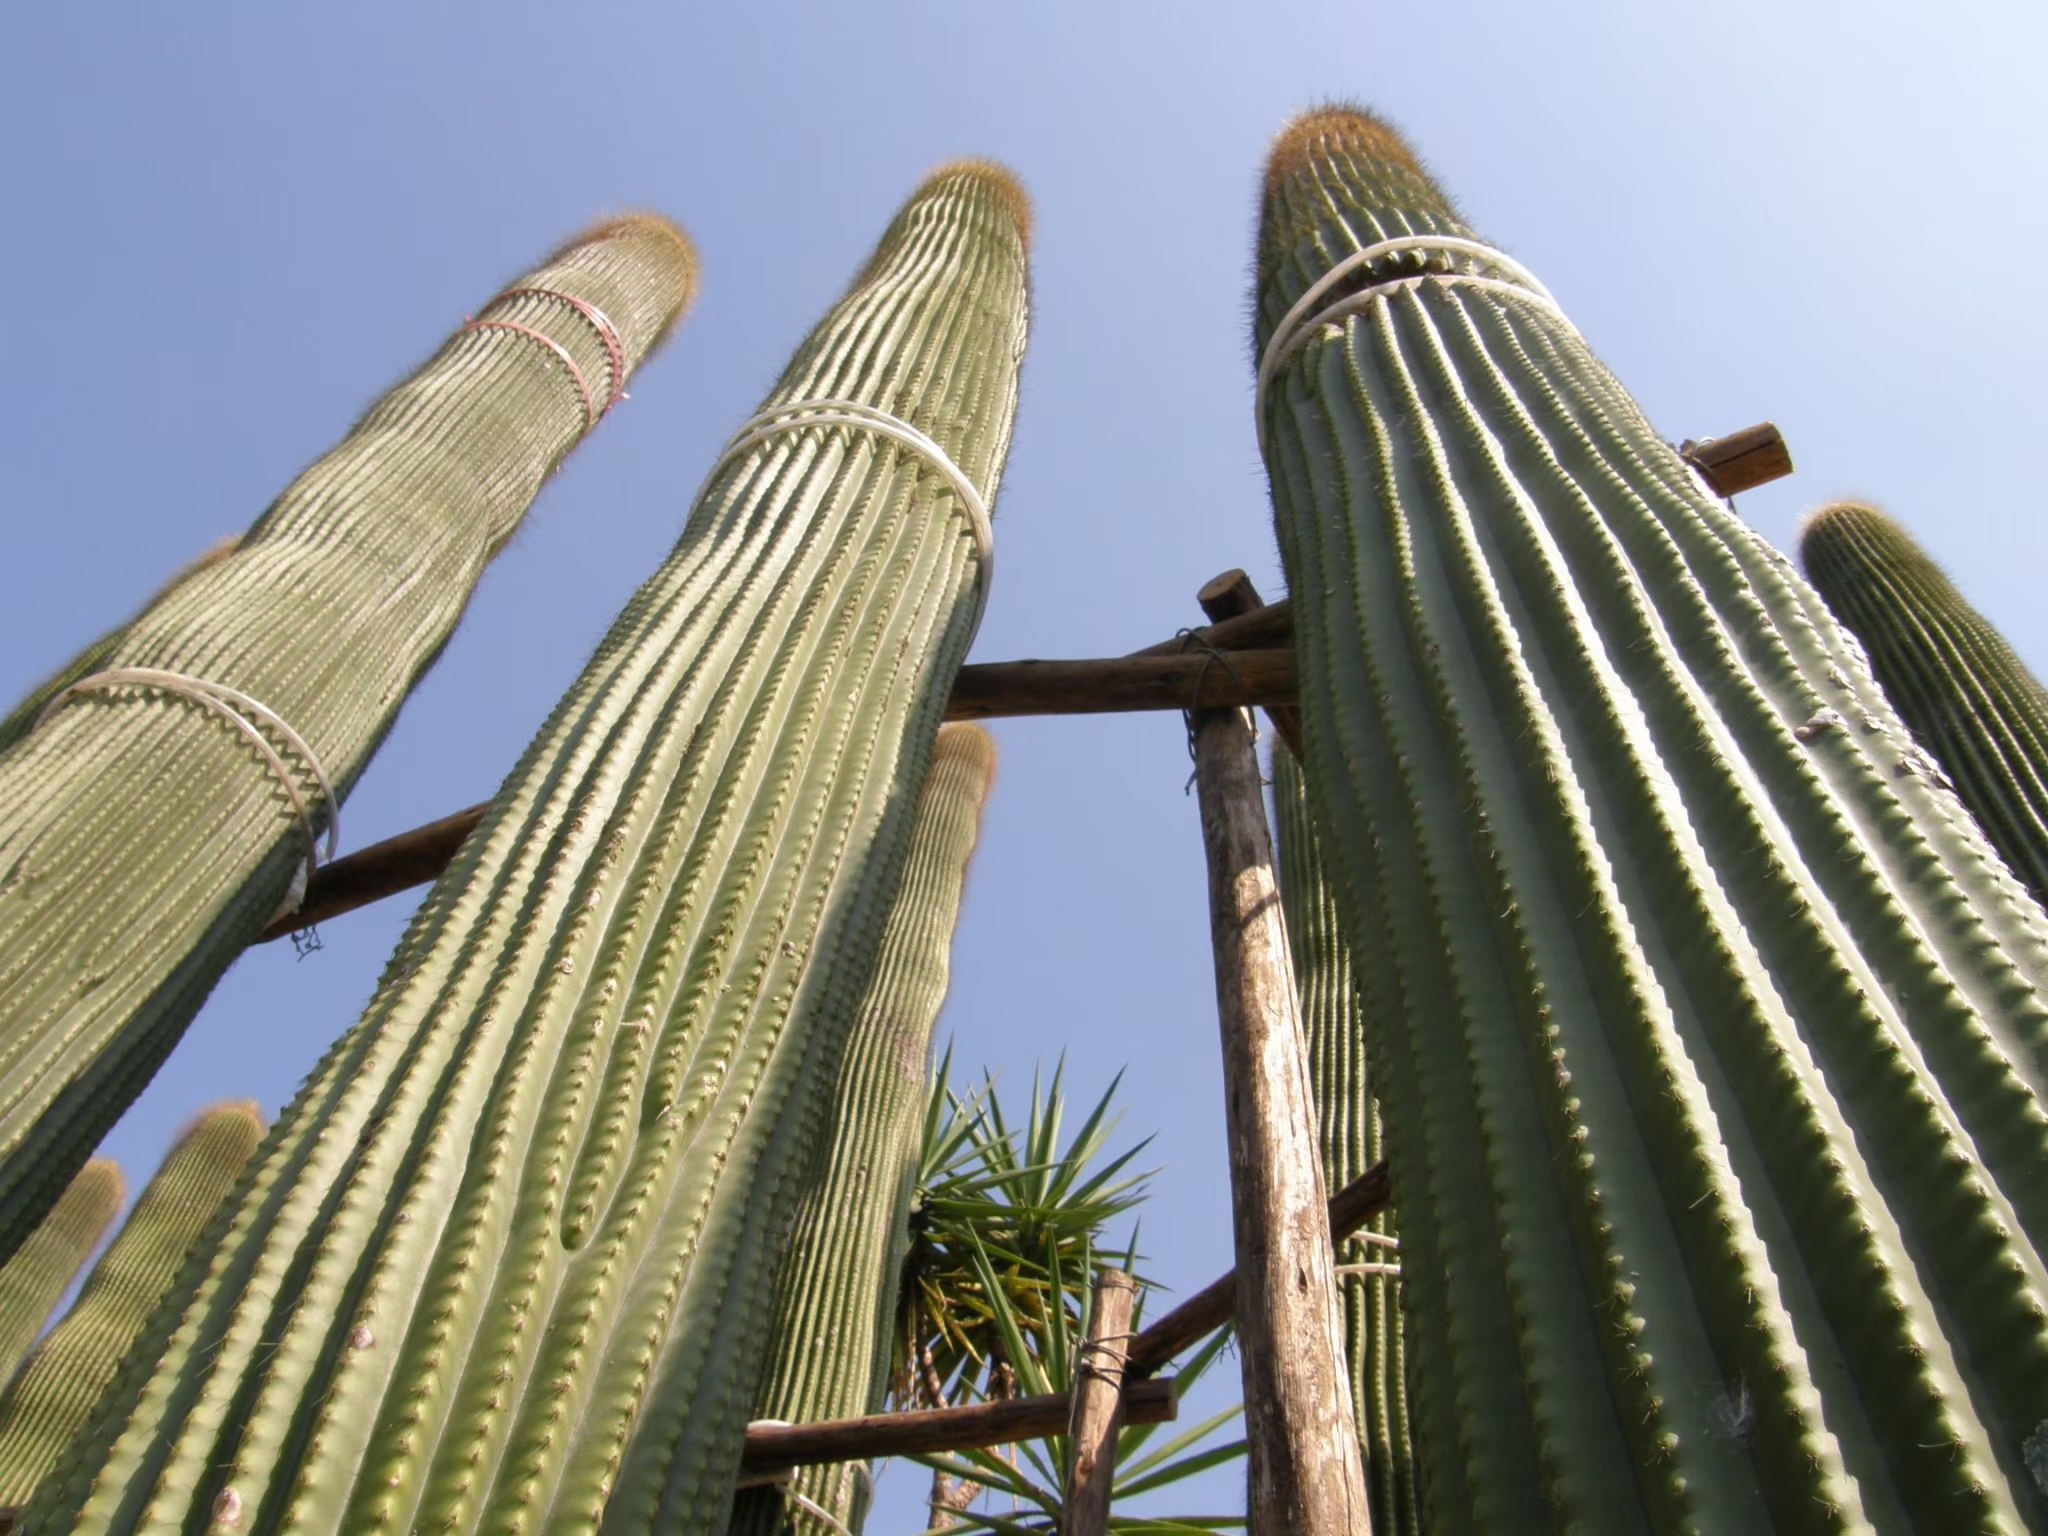 Tropical cactus landscape